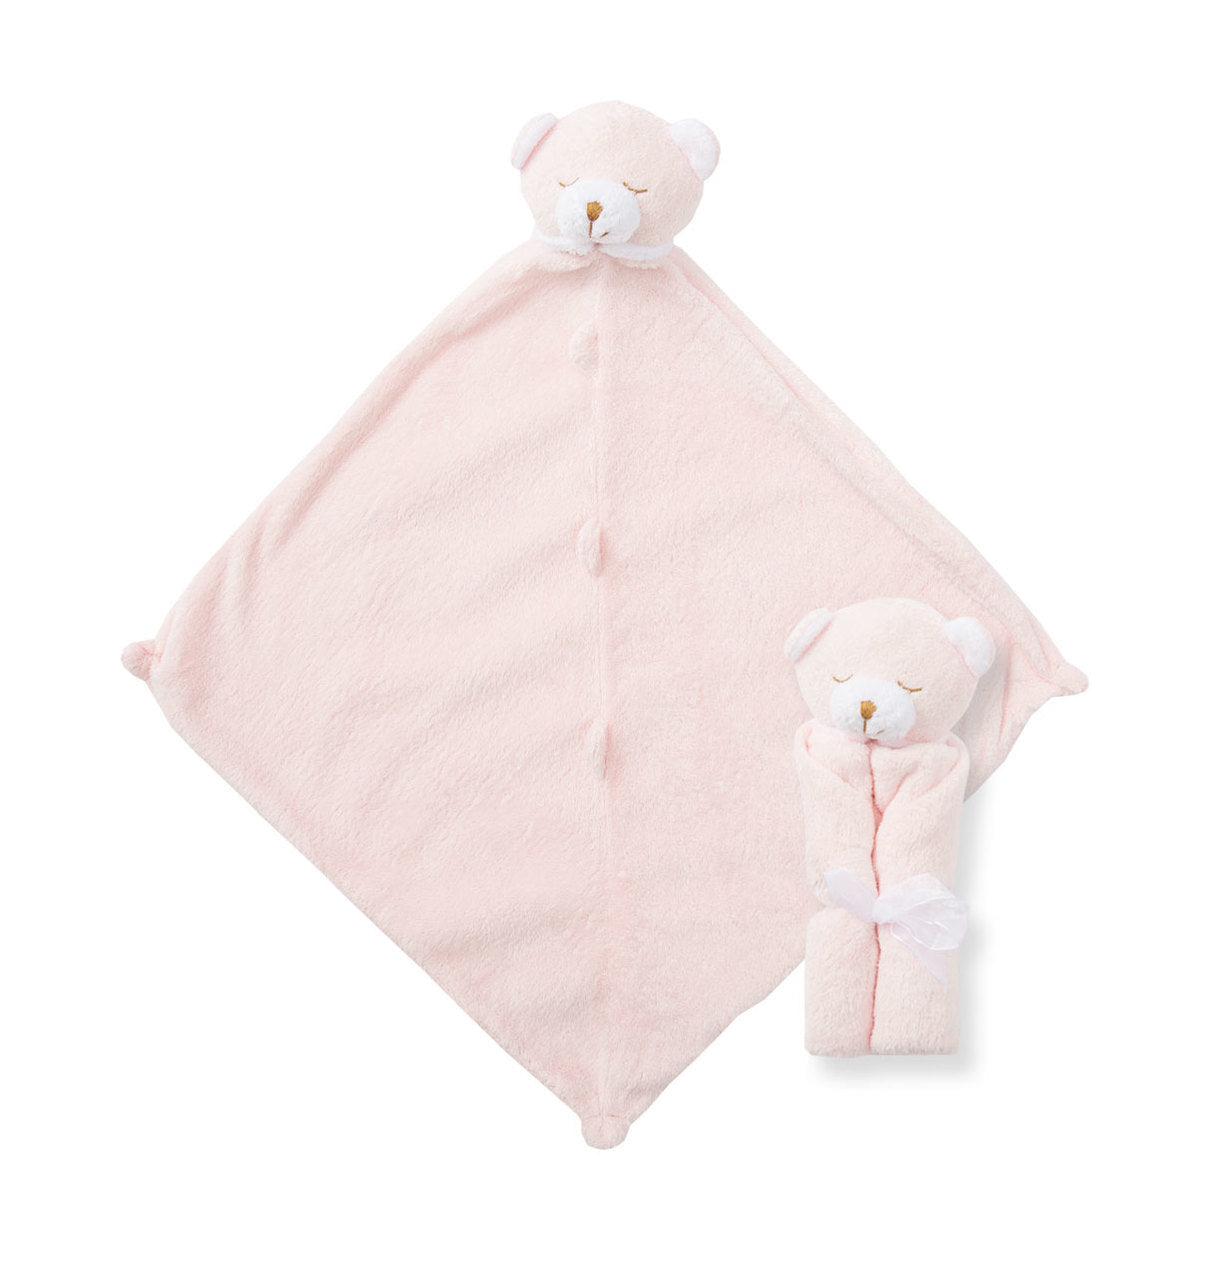 Cuddle Twins - Bear Pink - Angel Dear